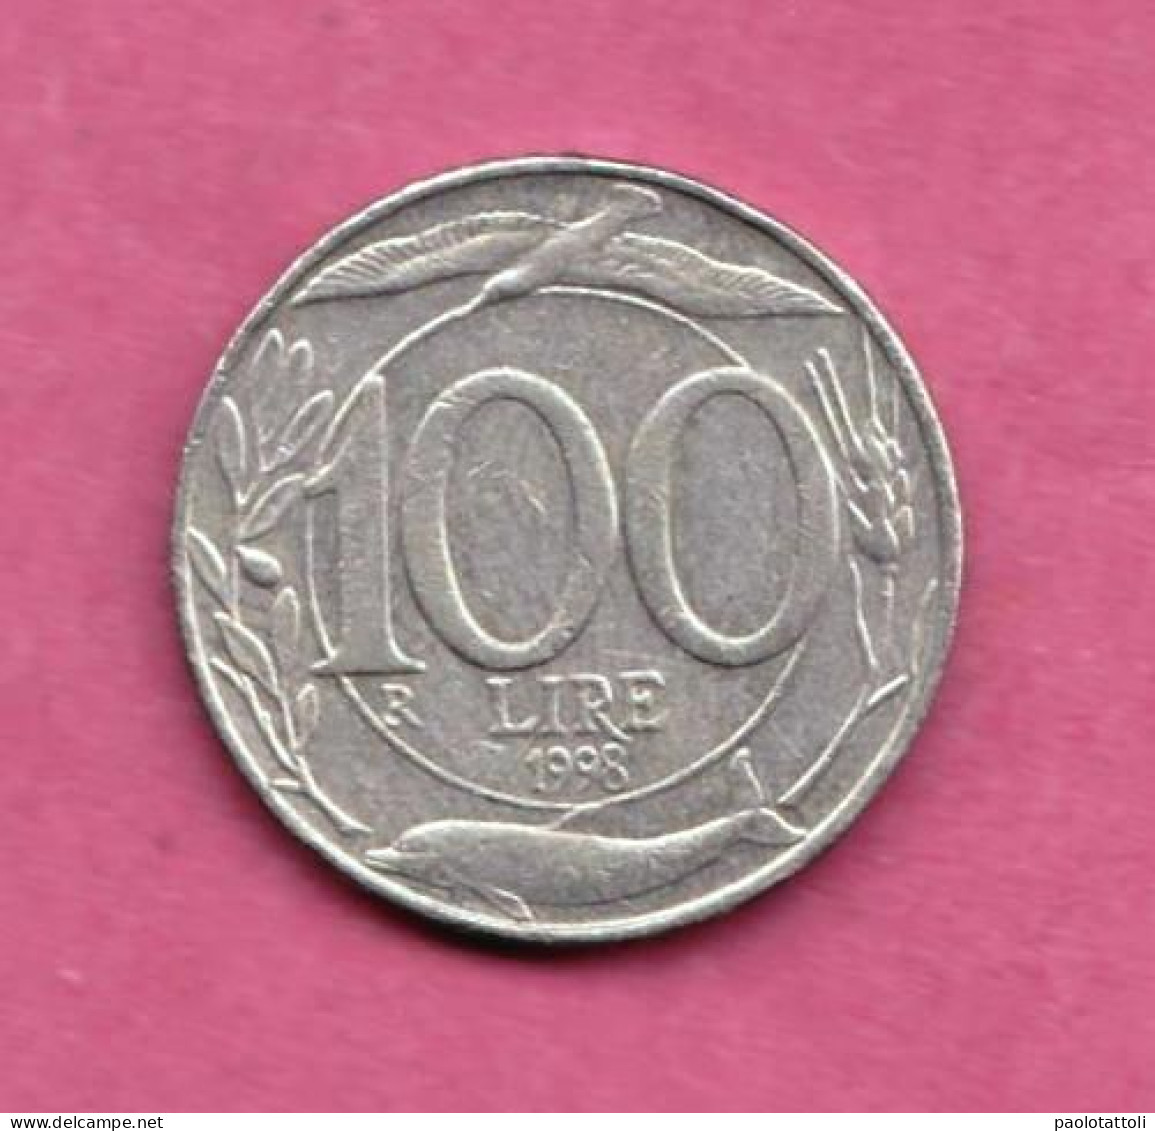 Italia, 1998- 100 Lire - Copper Nickel- Obverse Allegory Of The Repubblic. Reverse Denomination-   BB, VF, TTB, SS - 100 Lire